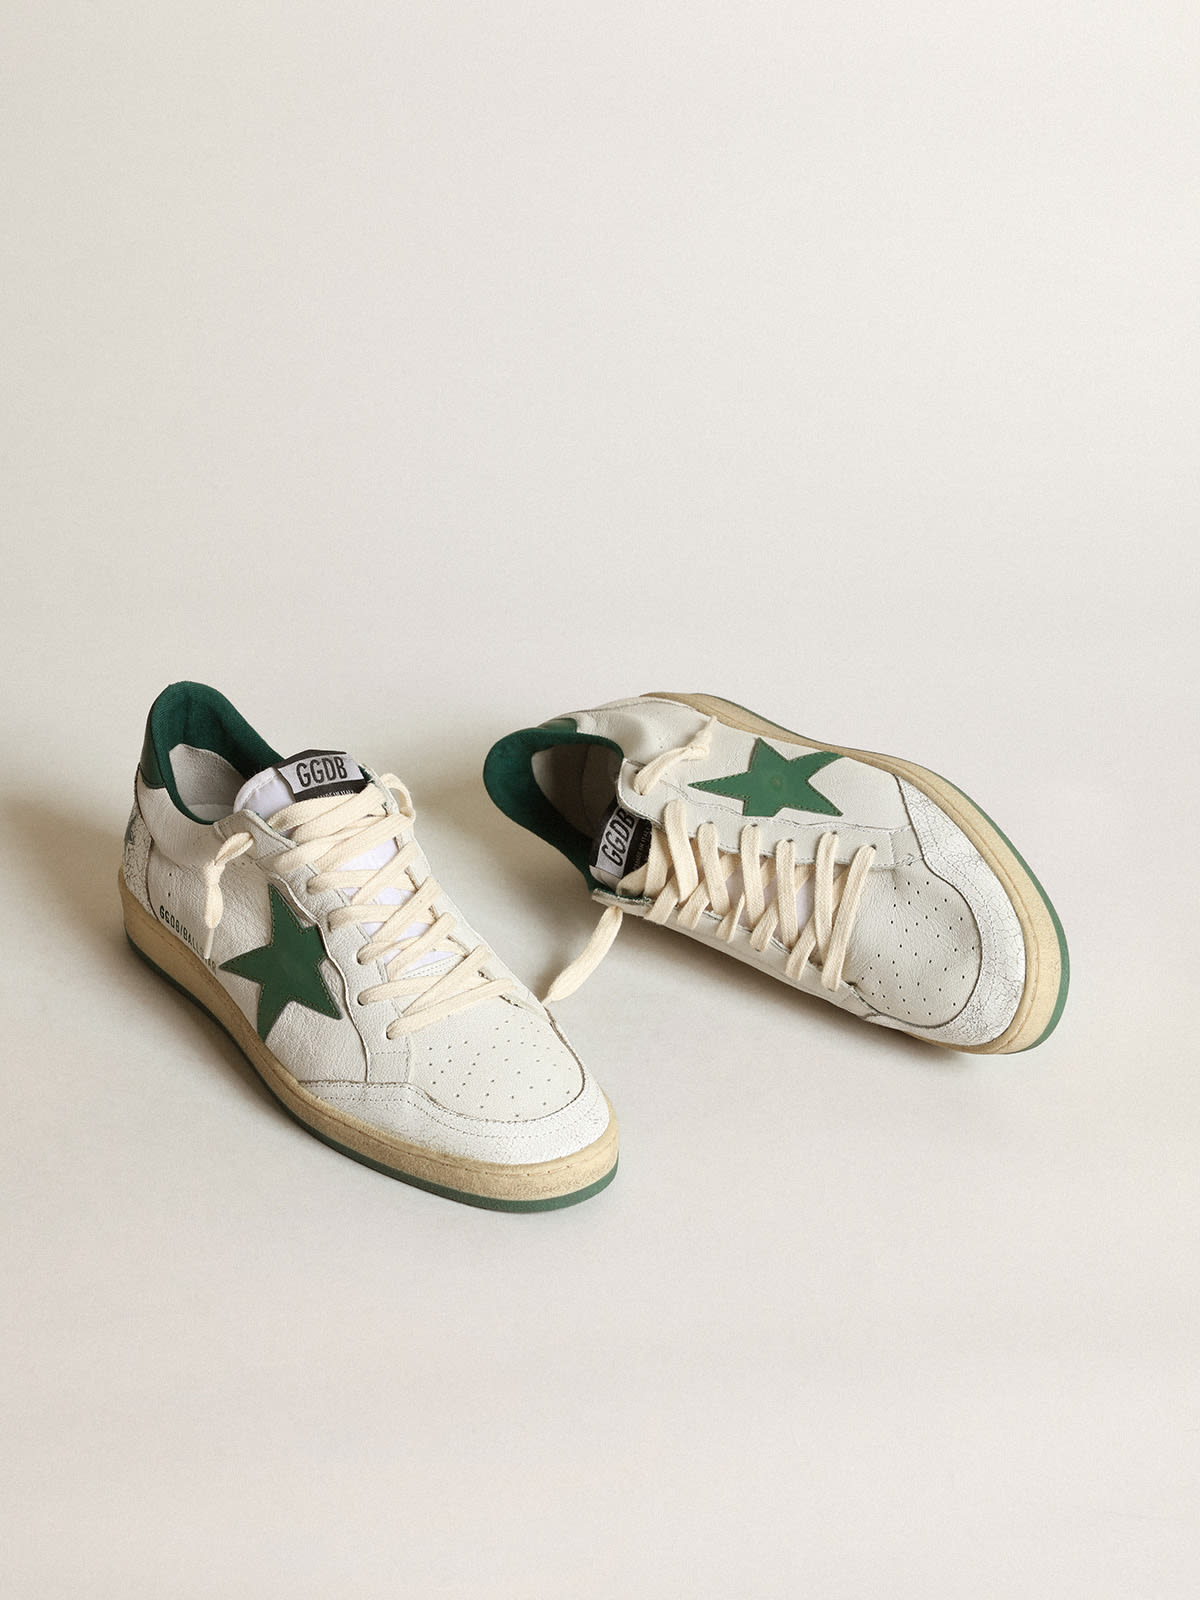 Golden Goose - Sneaker Ball Star aus weißem Nappaleder mit Stern und Fersenpartie aus mattgrünem Leder in 